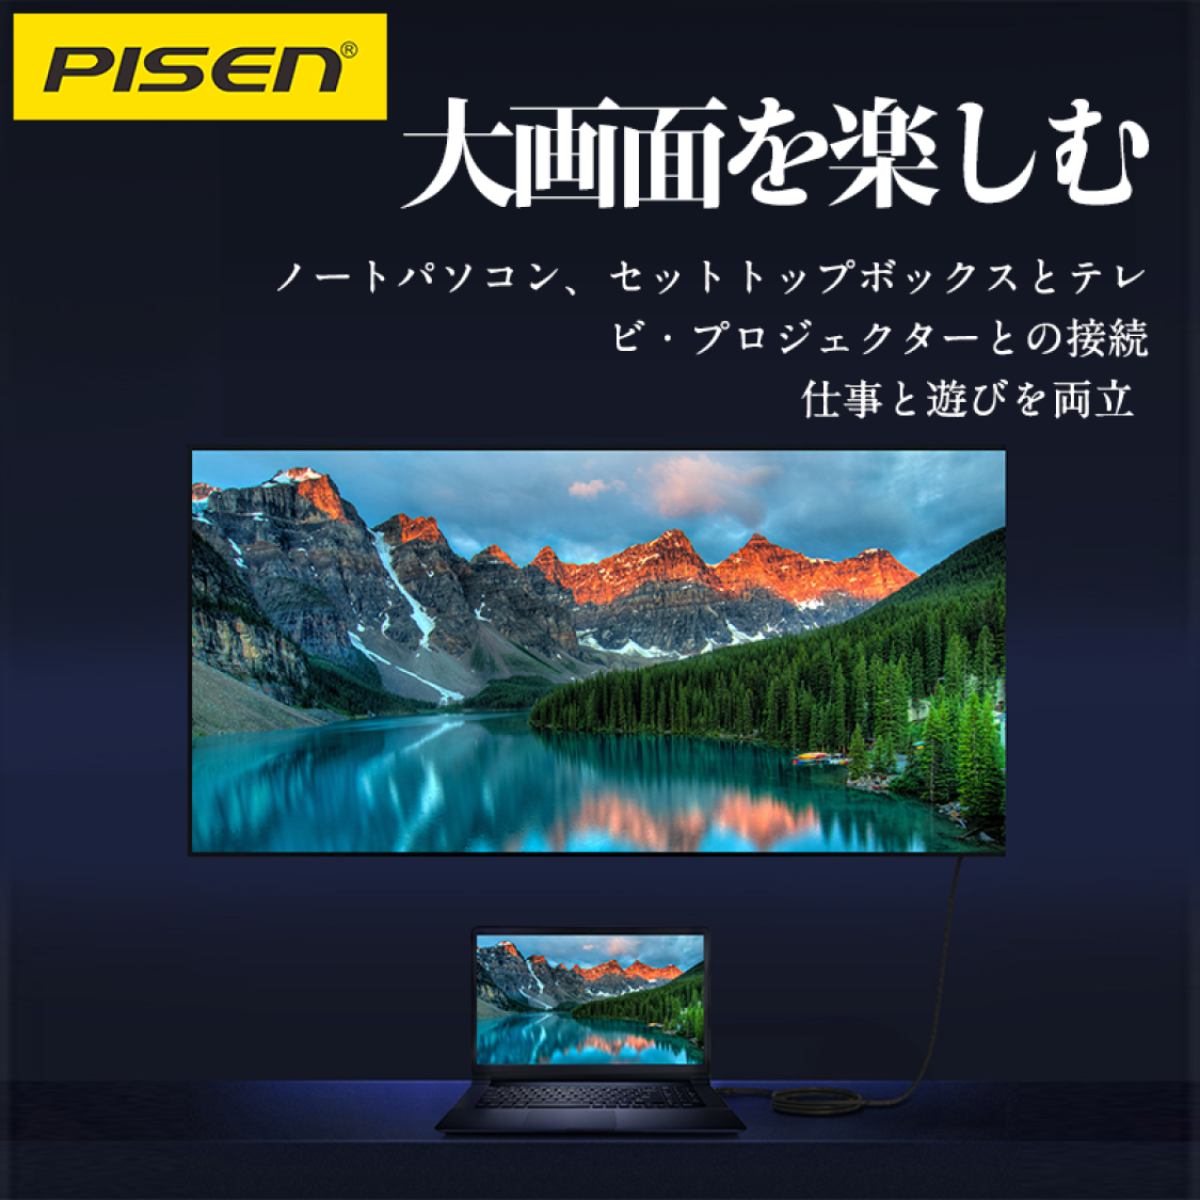 「新品初発売」 Pisen HDMI 2.0 編組高品位ケーブル 亜鉛合金製|undefined